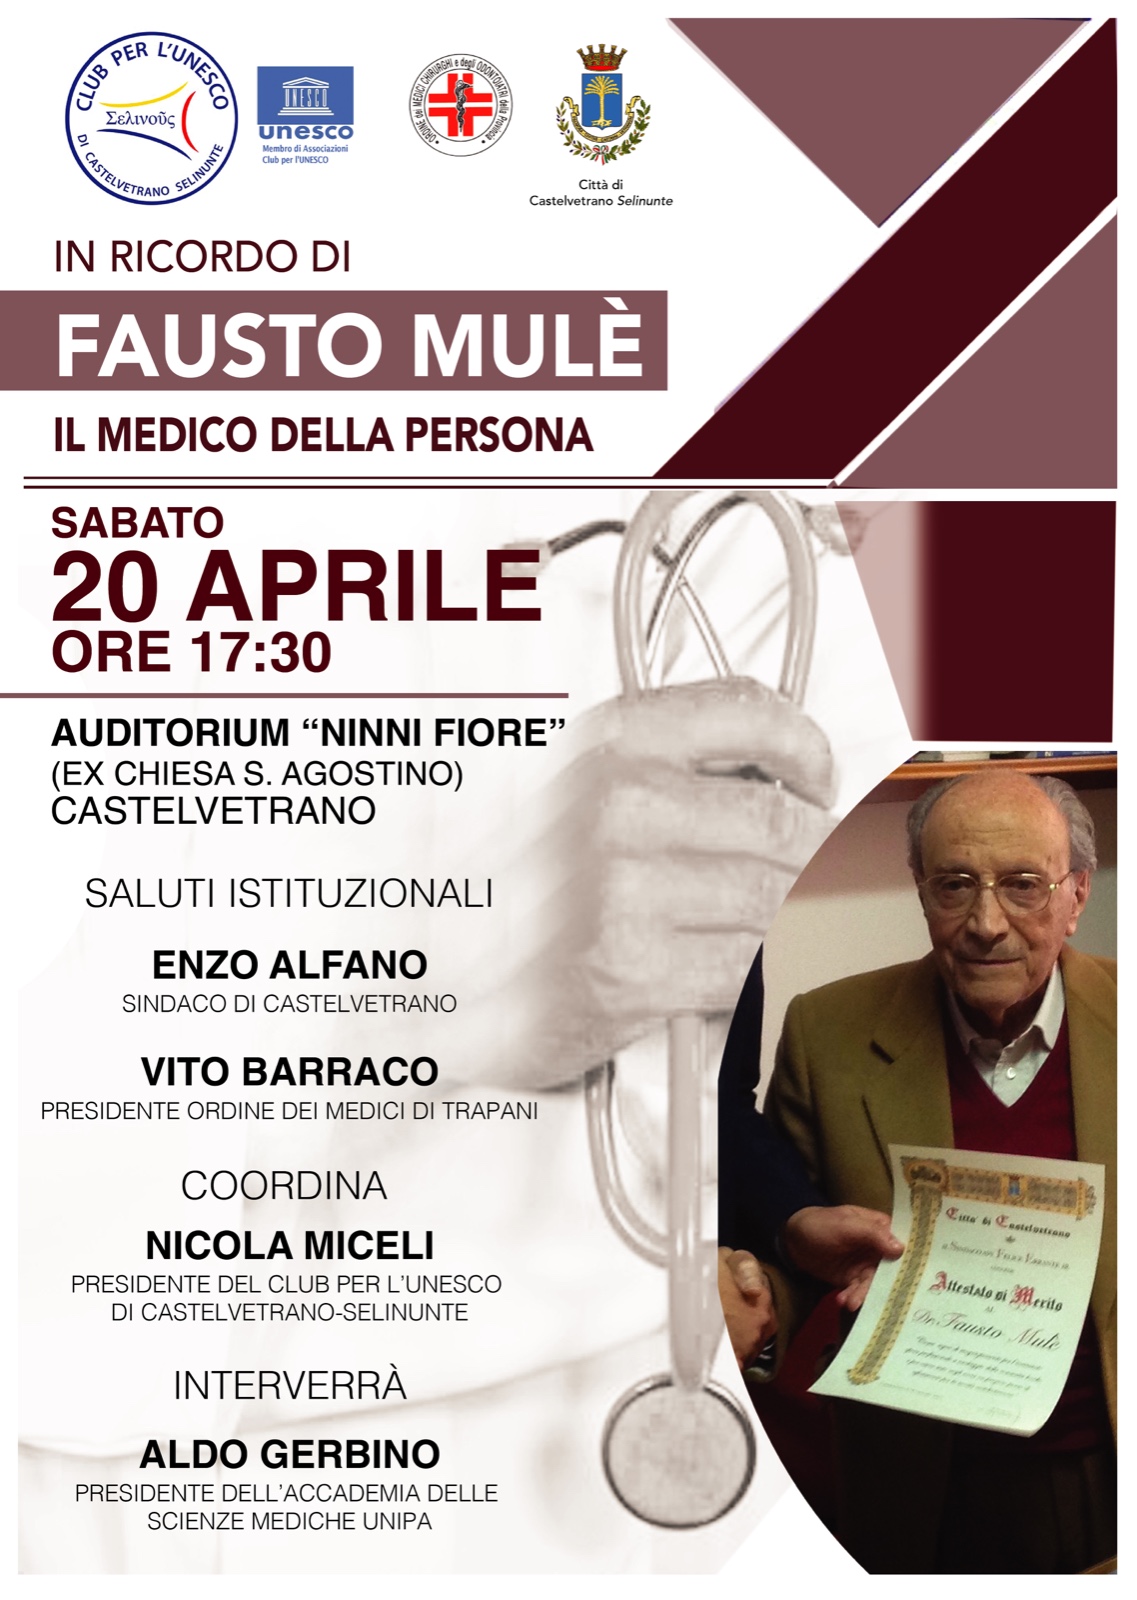 Il Club per l’Unesco di Castelvetrano Selinunte   ricorderà con un evento il dr. Fausto Mulè